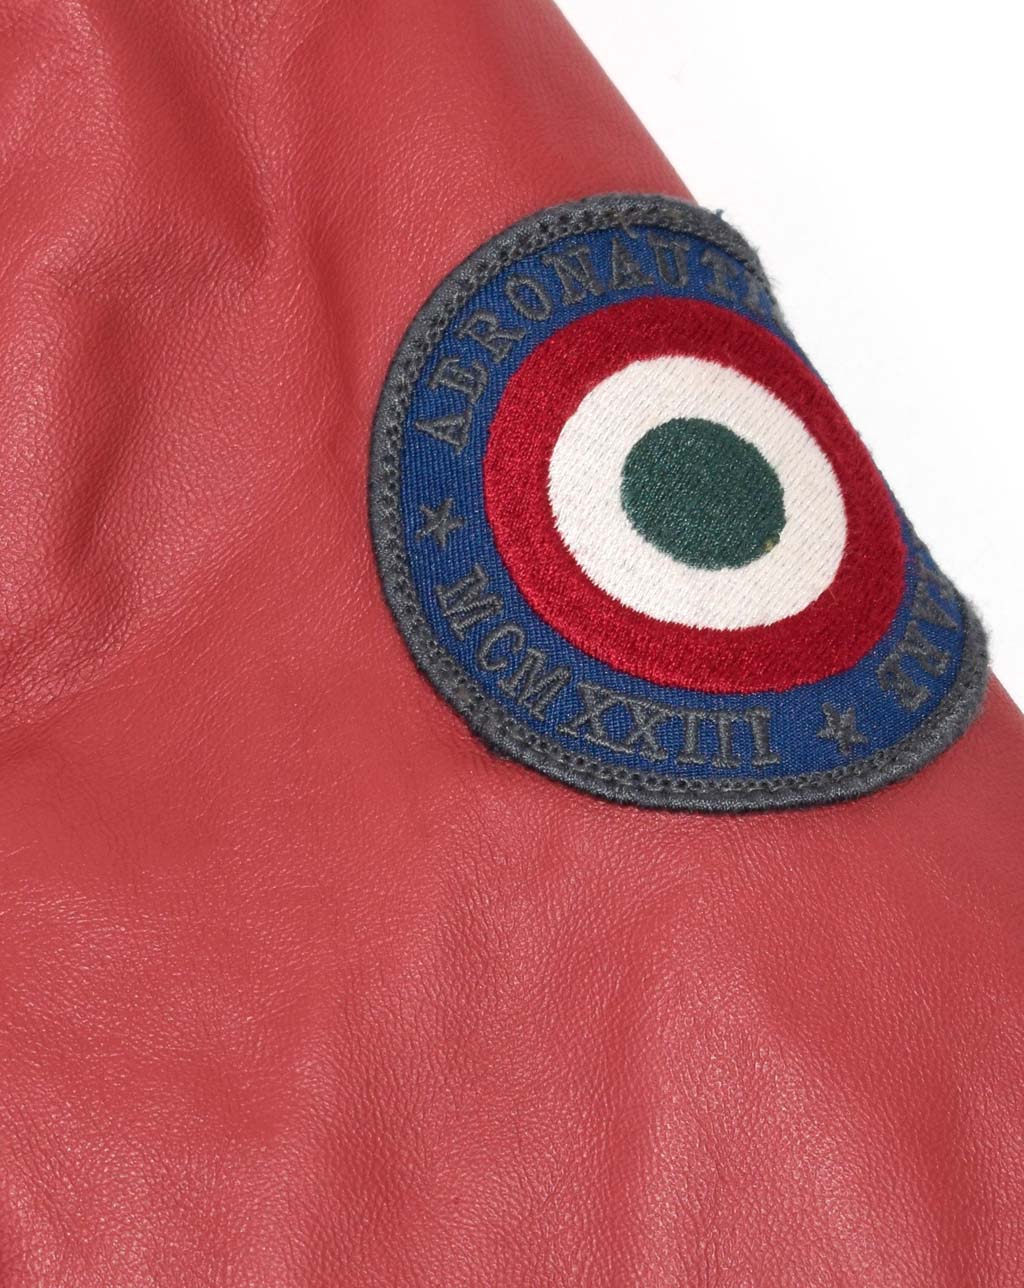 Женская куртка AERONAUTICA MILITARE кожа SS 20/IN rosso (PN 6003) 